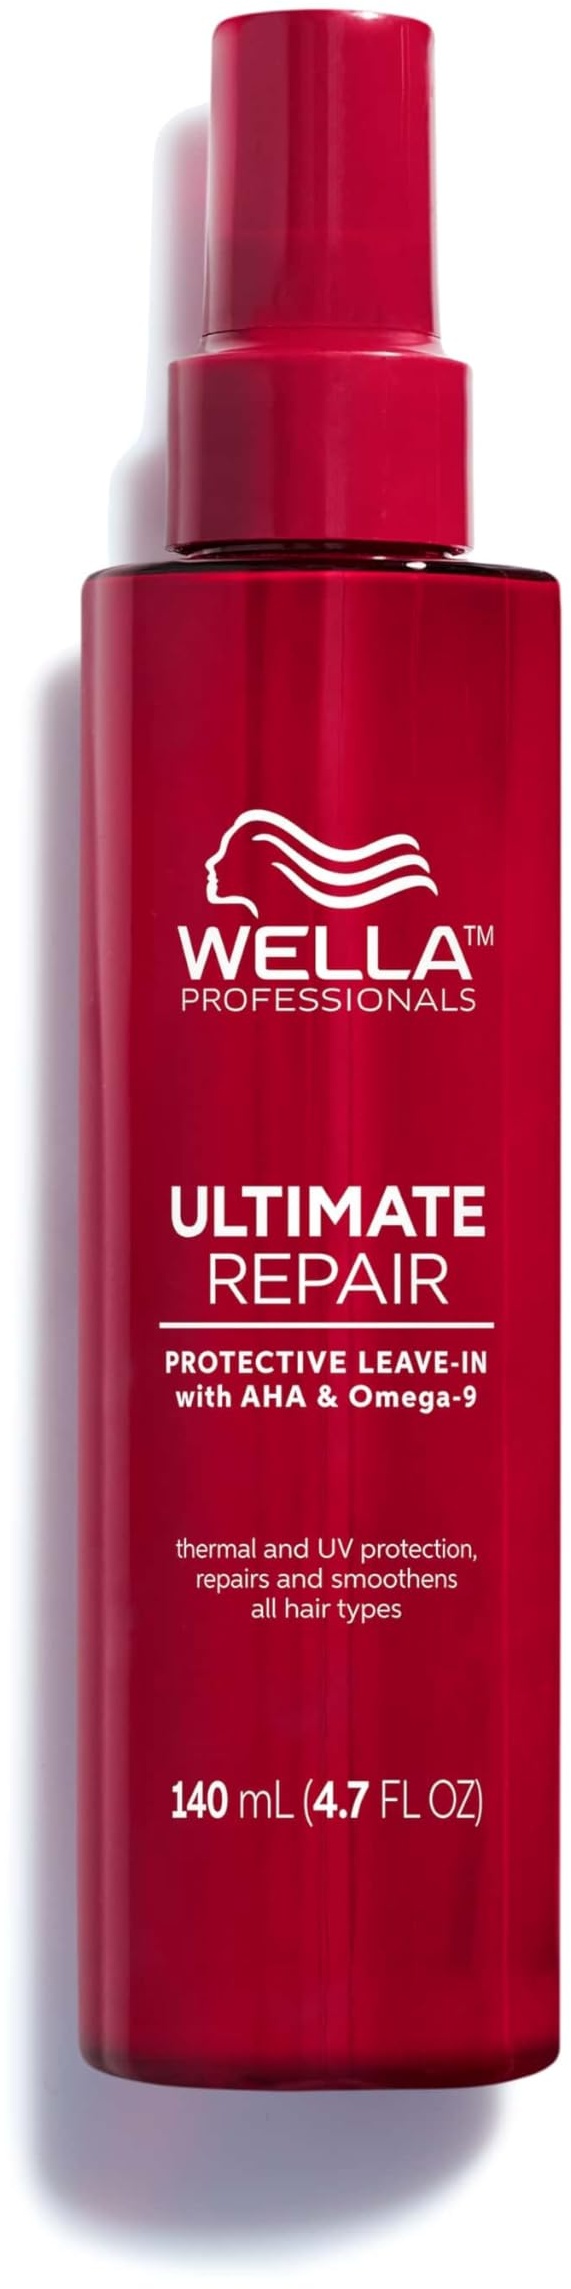 Wella Professionals Ultimate Repair Protective Leave-In Conditioner – Haarpflege ohne Ausspülen mit Anti Frizz Wirkung, UV- und Hitzeschutz – reparierende Feuchtigkeitspflege – 140 ml